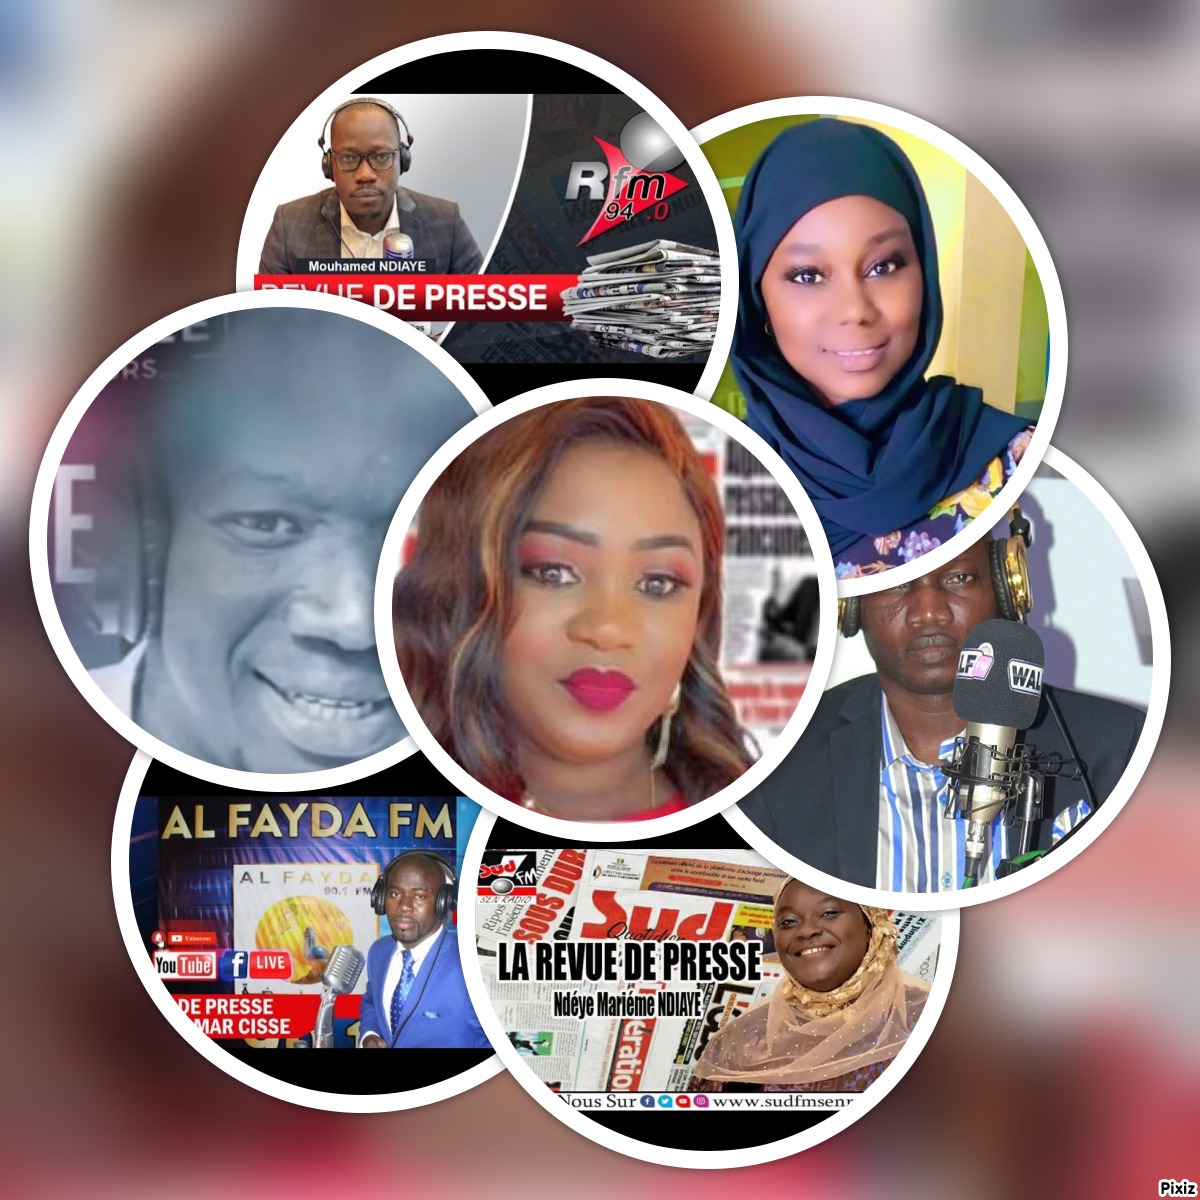 La revue de presse en wolof sur les radios Sénégalaises